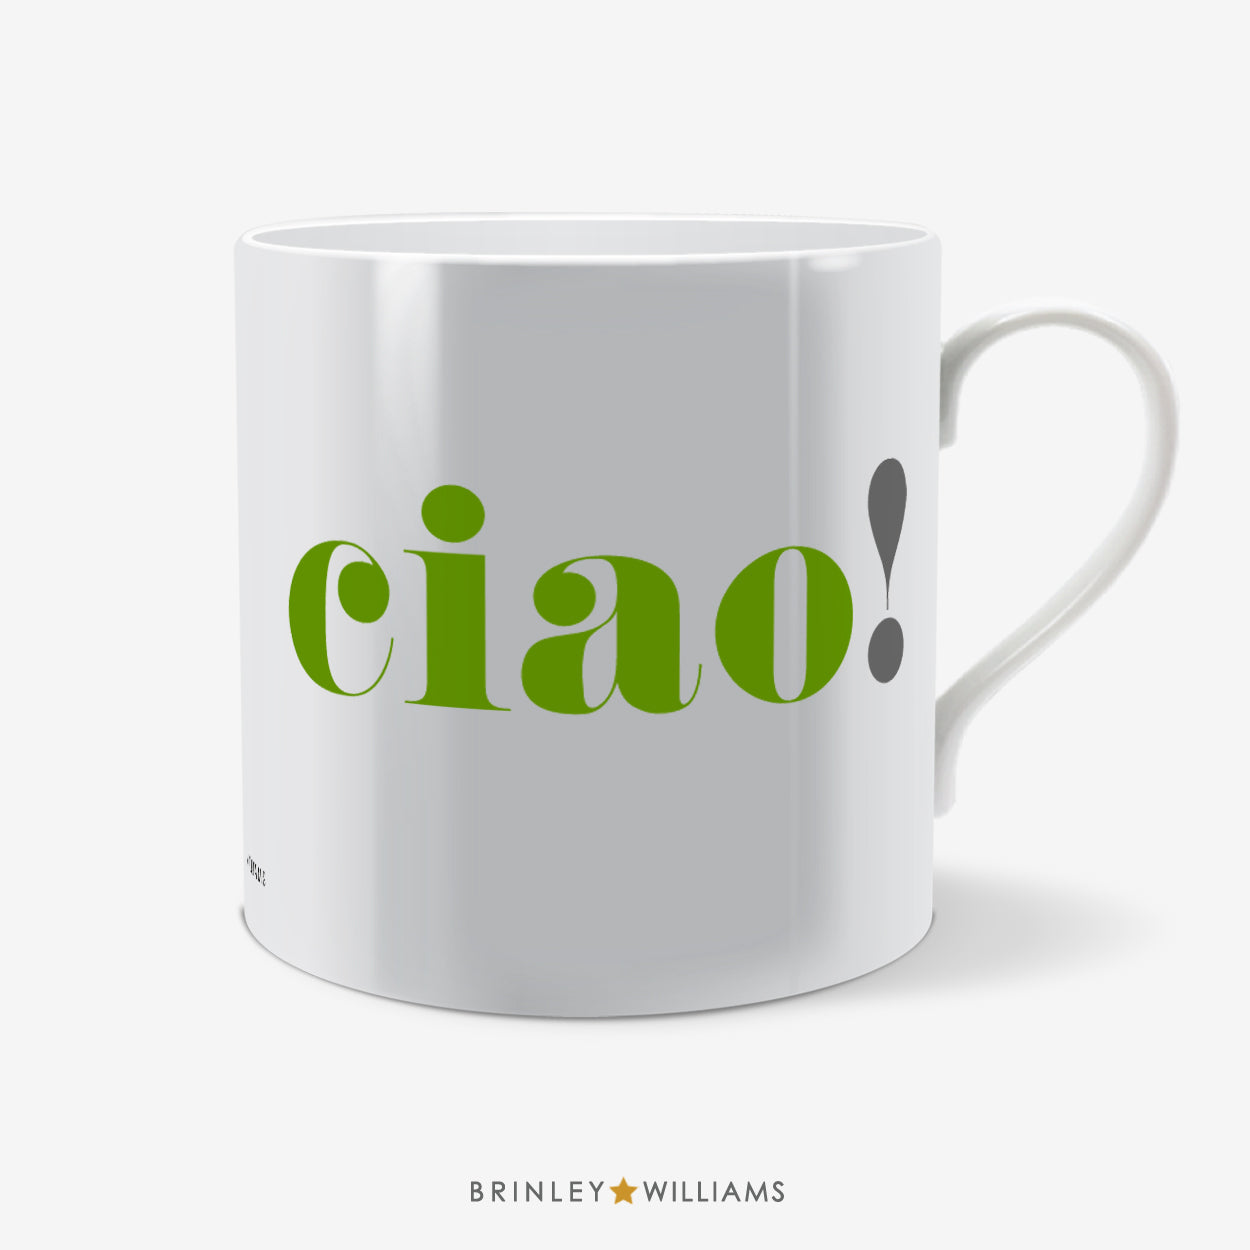 Ciao Fun Mug - Green